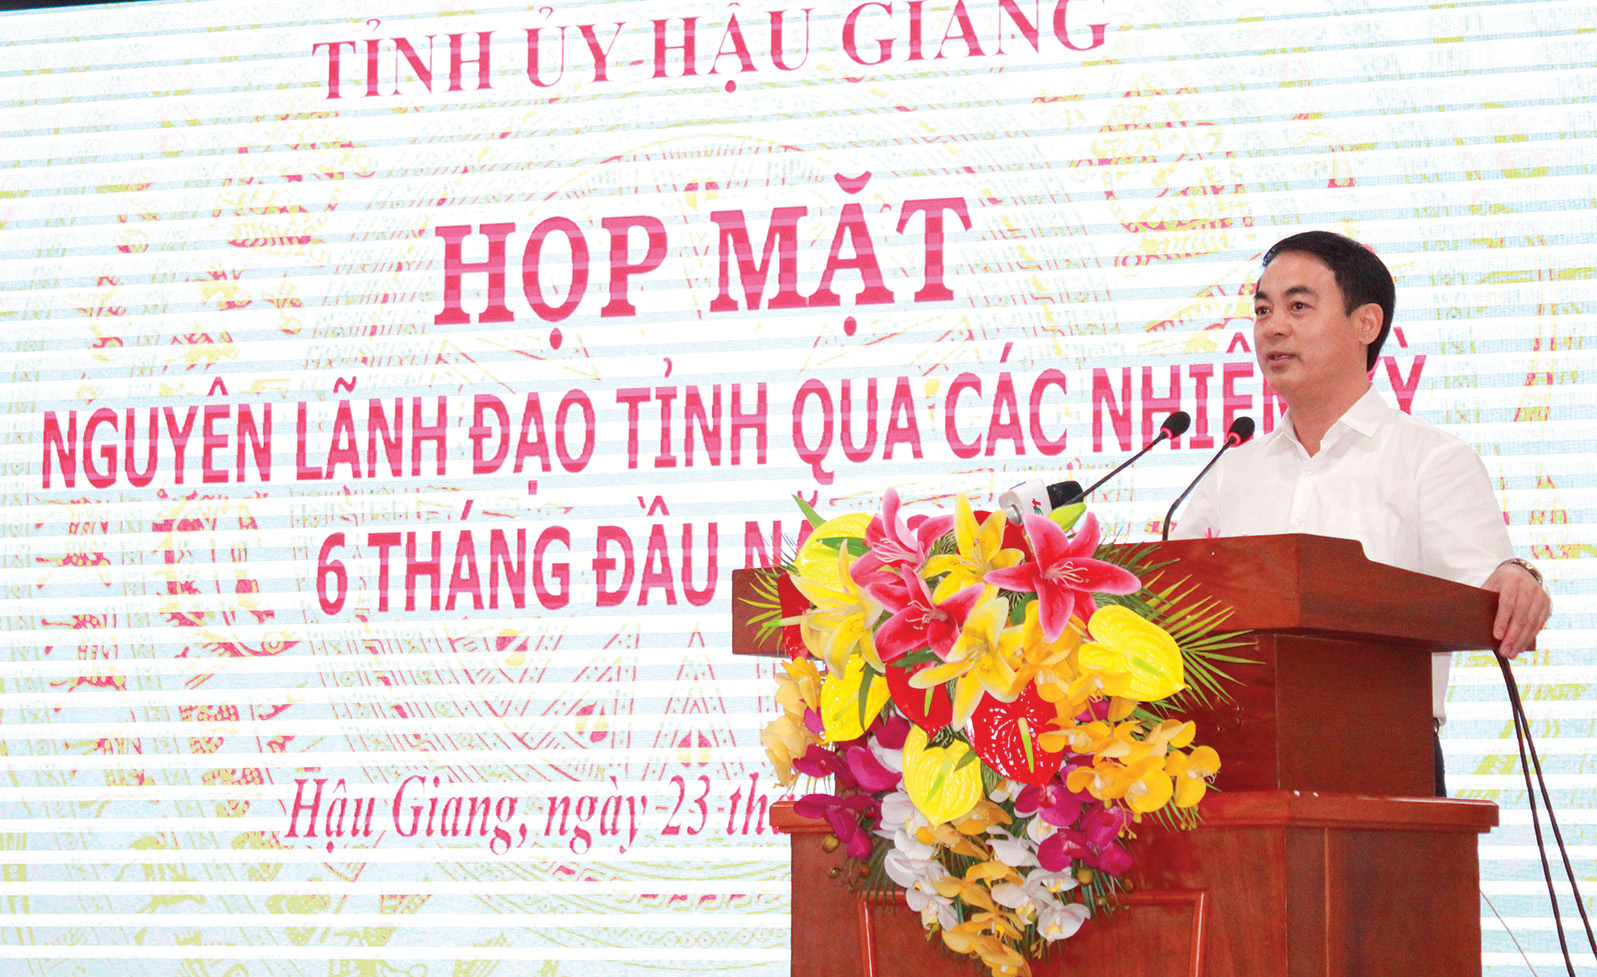 Đồng chí Nghiêm Xuân Thành - Ủy viên Trung ương Đảng, Bí thư Tỉnh ủy Hậu Giang tại buổi họp mặt Nguyên lãnh đạo tỉnh uqa các thời kỳ.